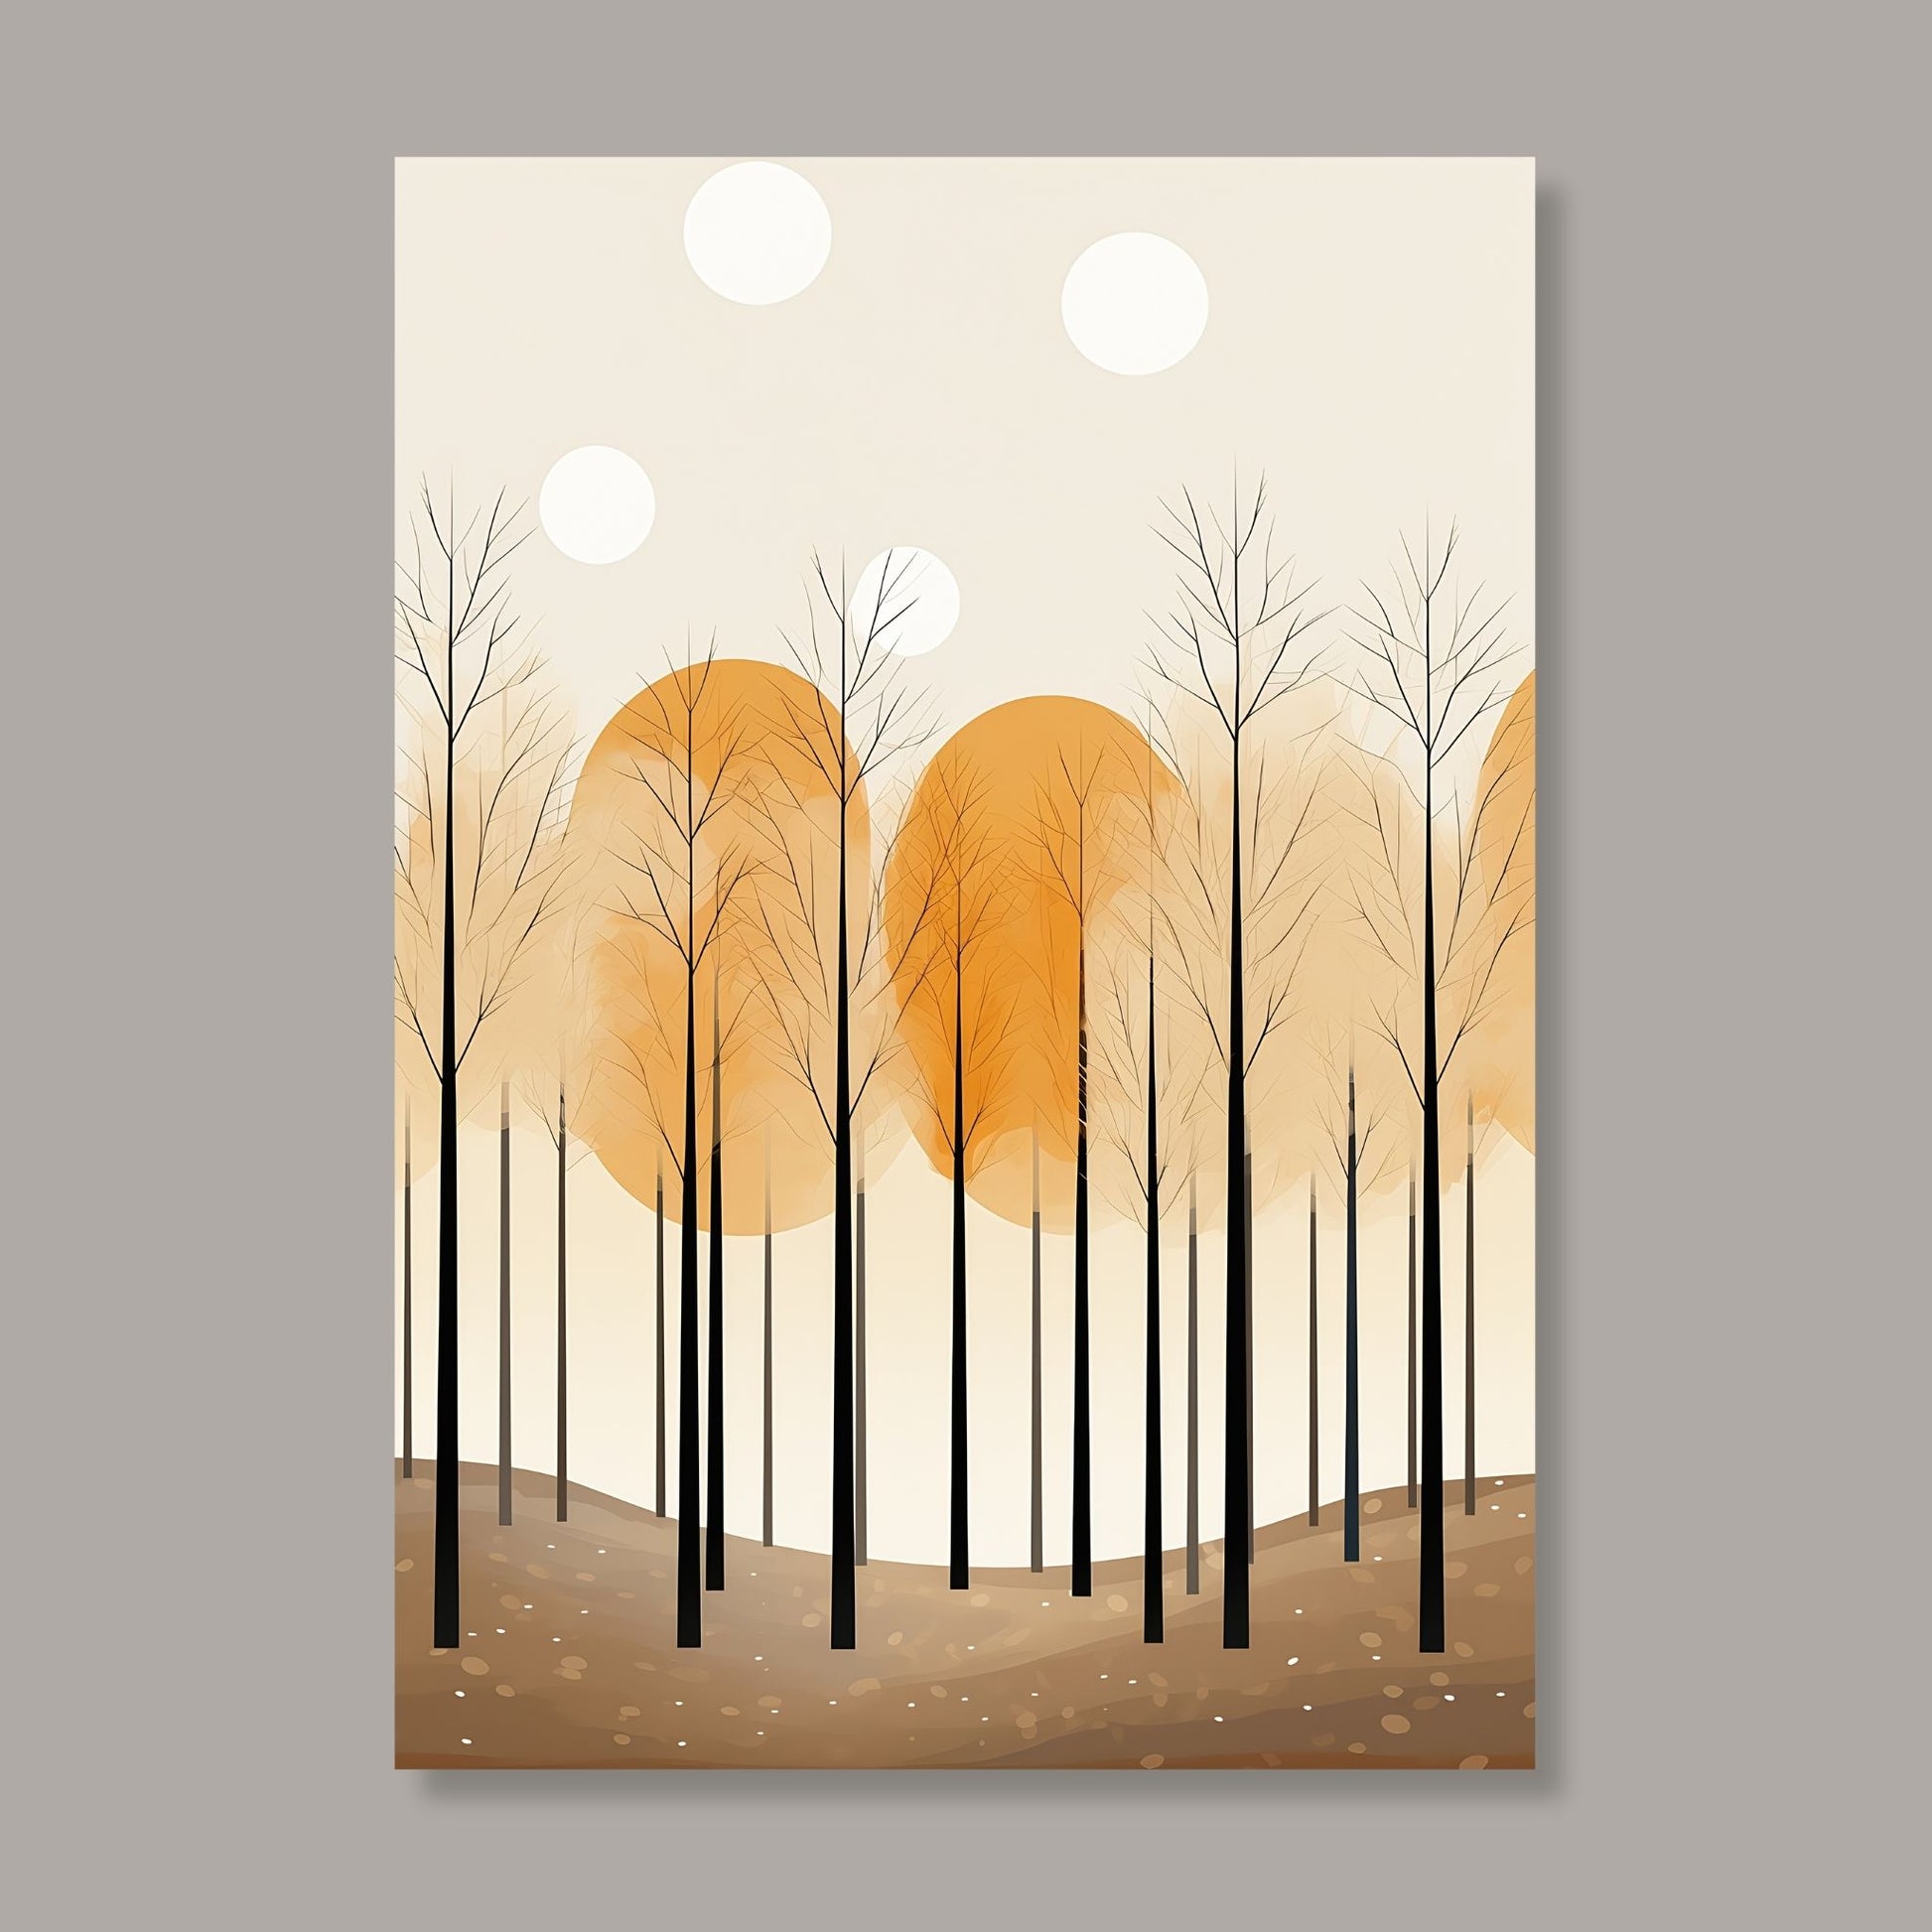 Abstract Forest - grafisk og abstrakt motiv av høye, slanke trær og skog i rust- og beige fargetoner. Illustrasjon av motiv på lerret.